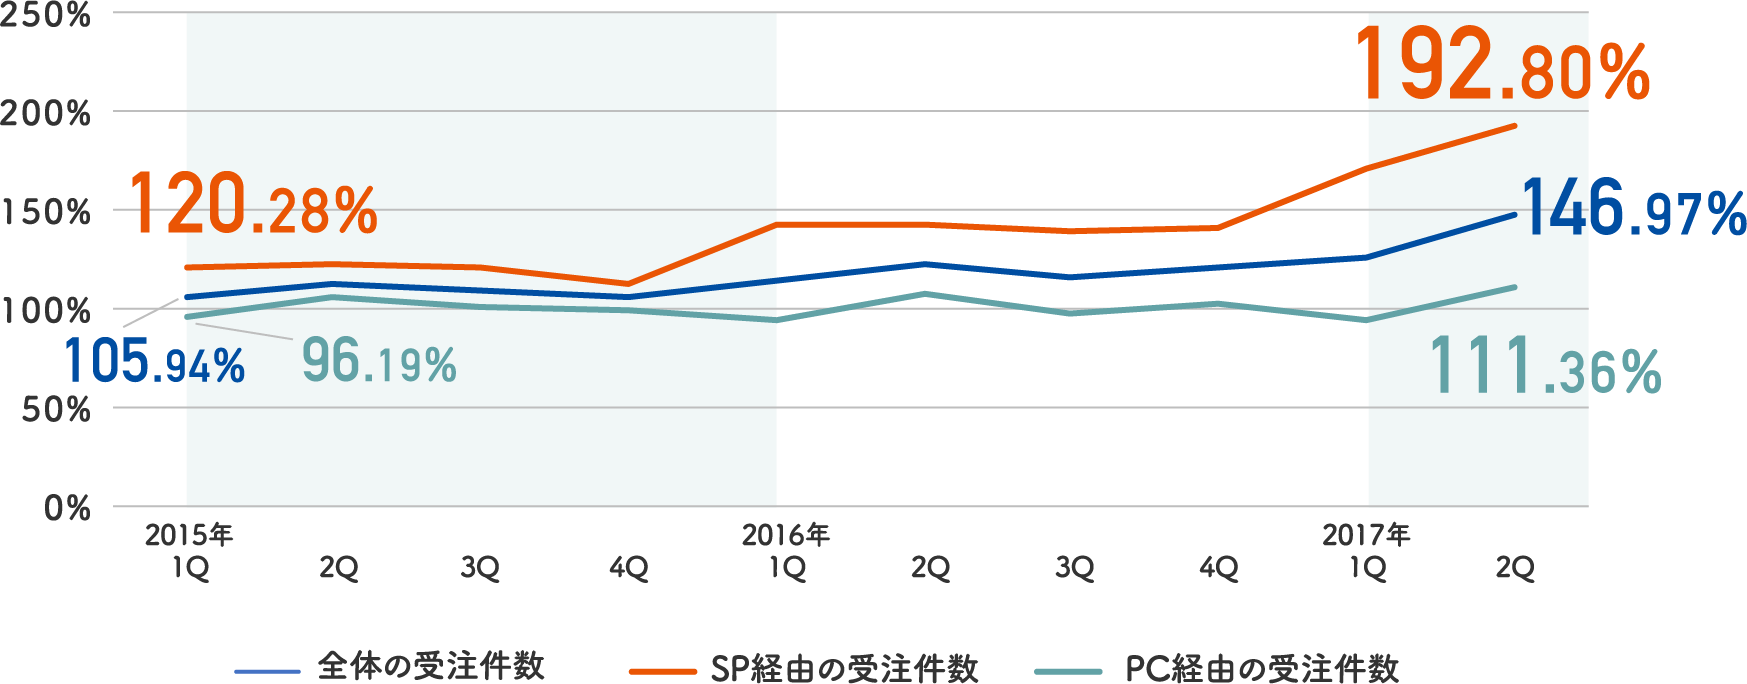 調査店舗のデバイス別受注件数（2014年各4半期を100%とし、同四半期を比較）は2016年度でスマートフォンとPCの全体での経由が146.97％の伸び,スマートフォンでの受注件数が192.80％の伸び率,PC経由での受注数が111.36％の伸び率